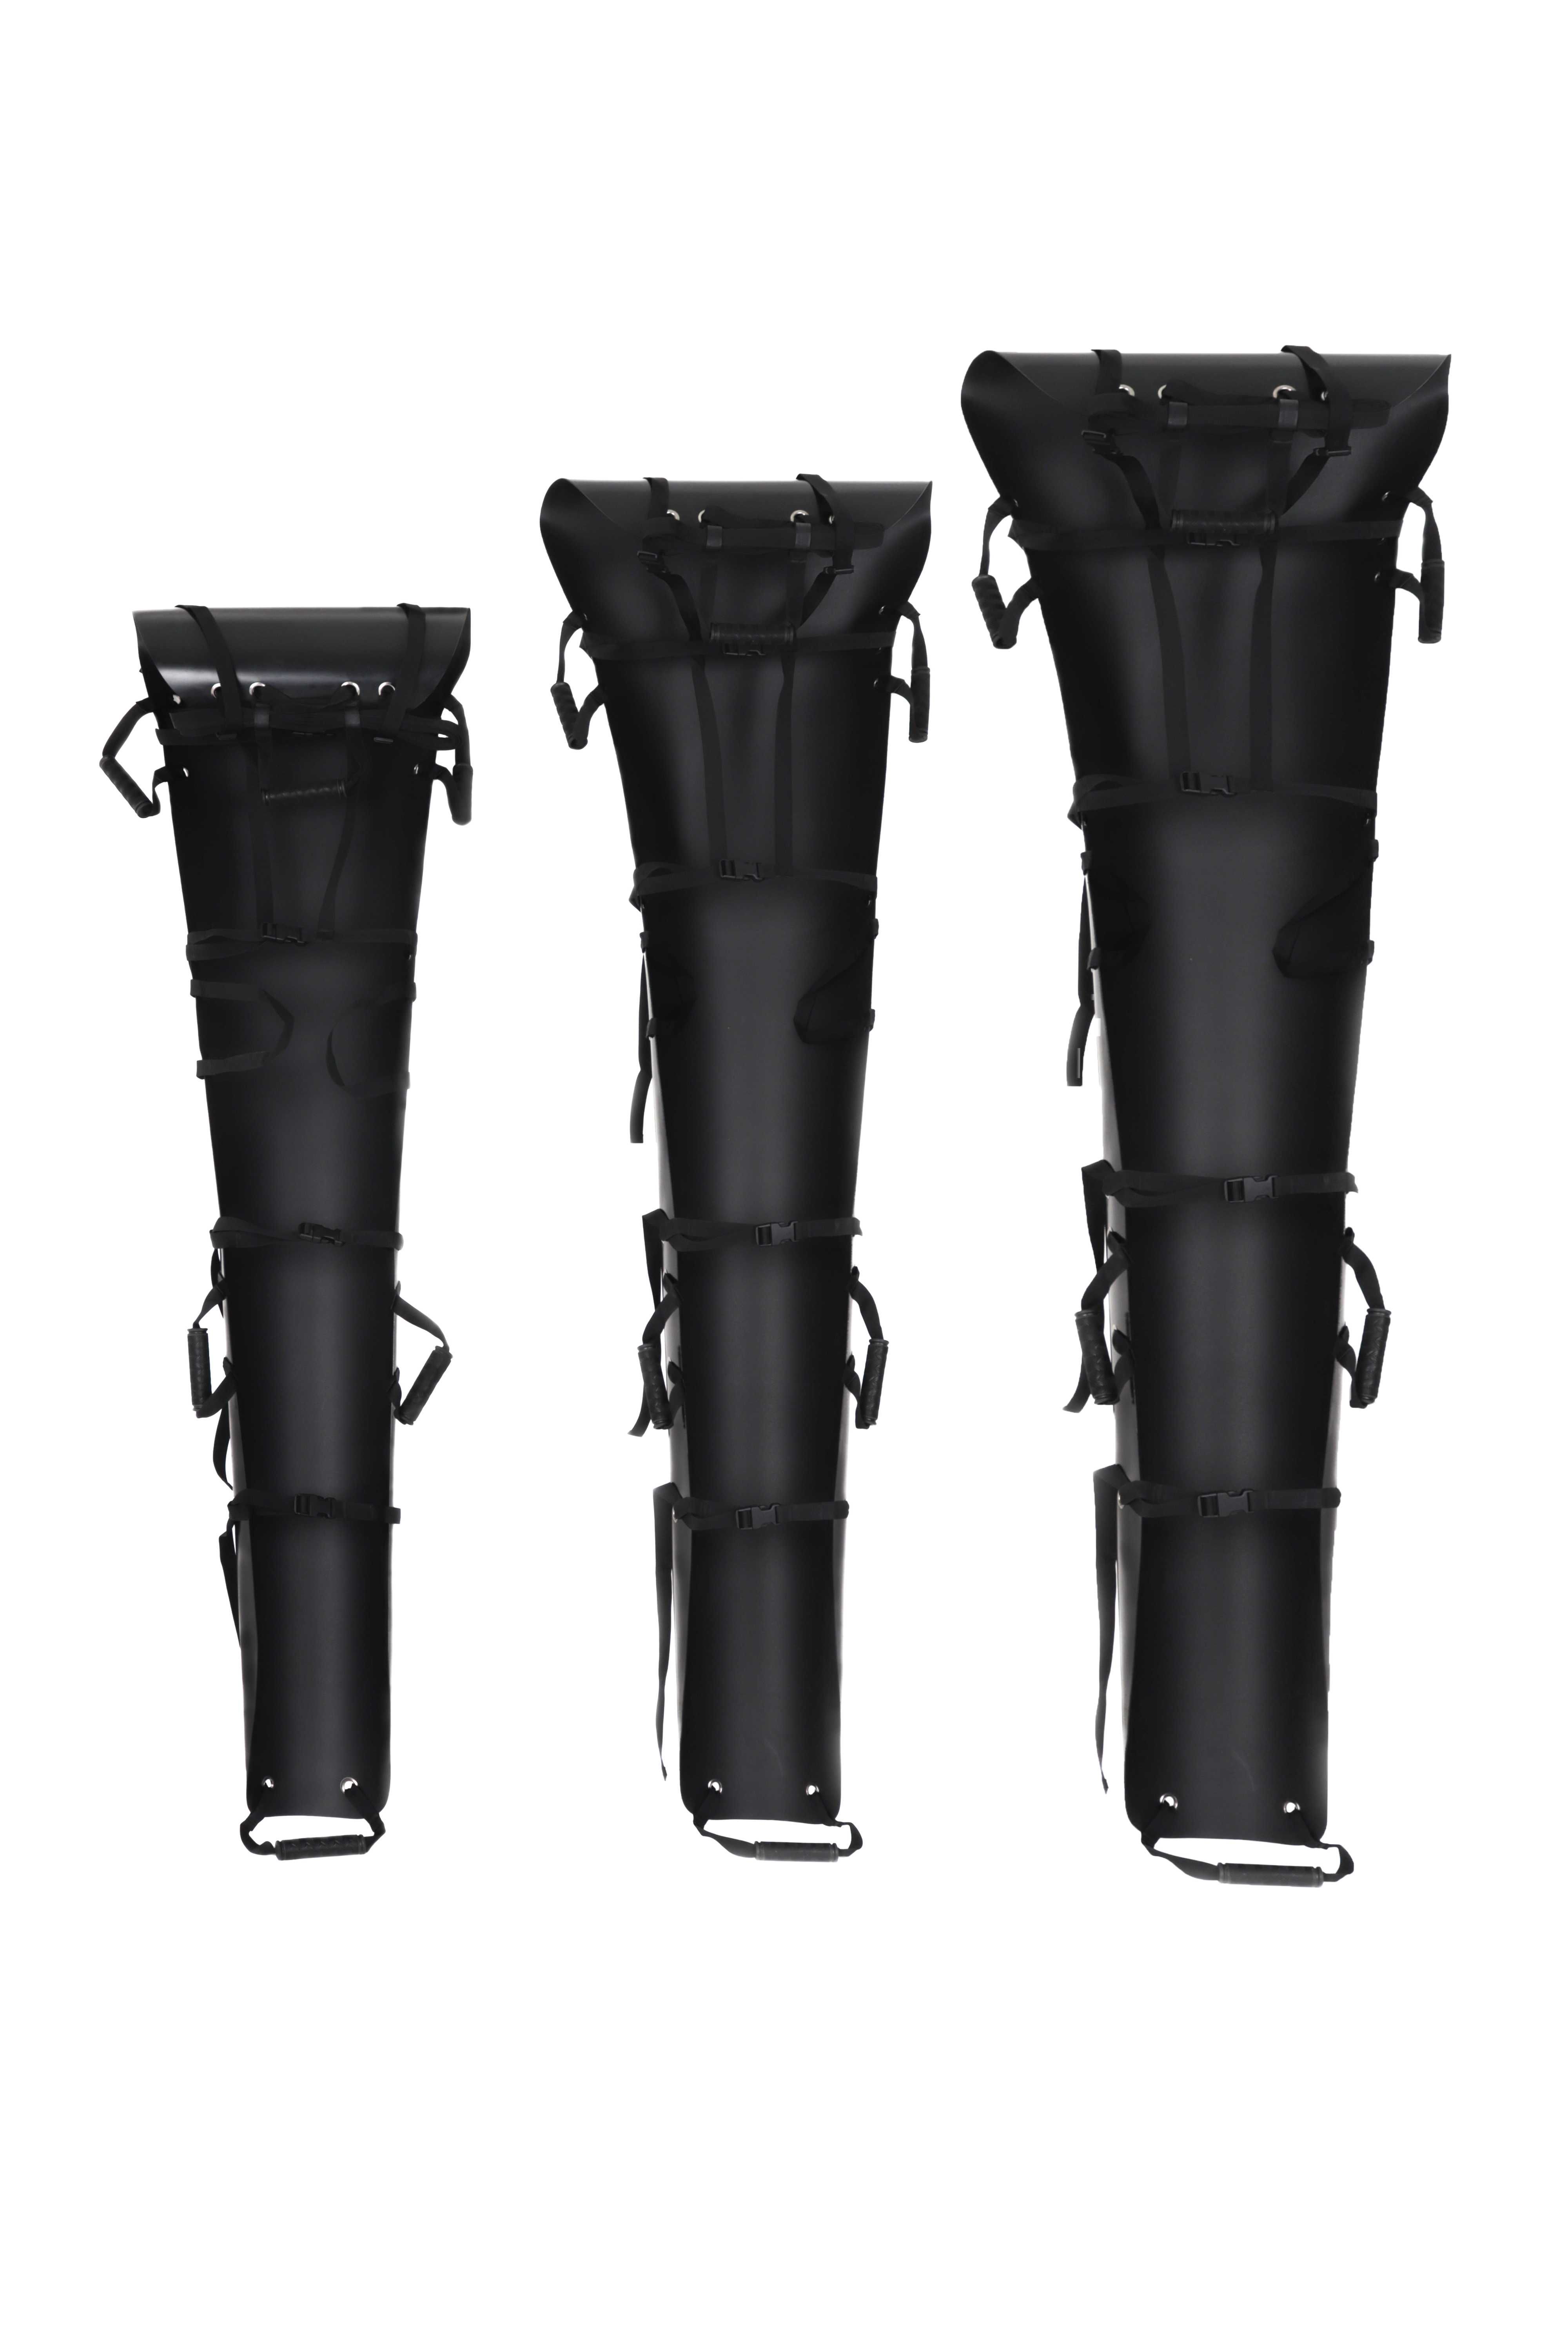 Ноші пластикові волокуші/ноши пластиковые волокуши СКЕД+ 220х50 см